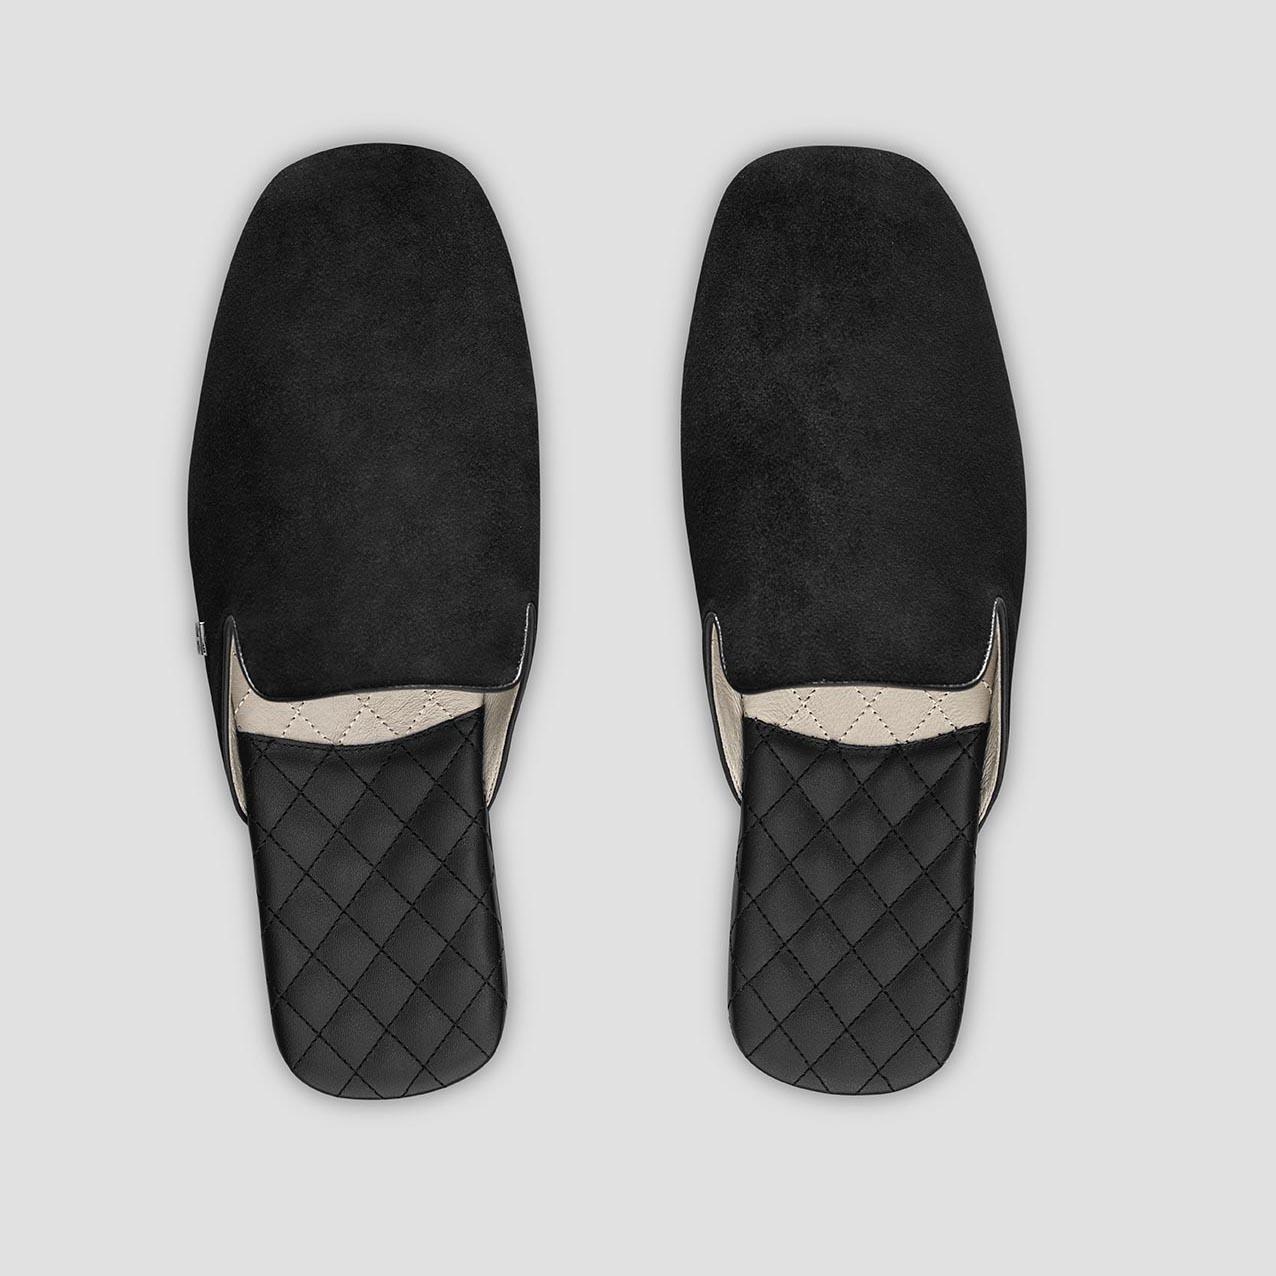 Тапочки Togas Реон черные мужские кожаные, размер 42-43 держатель для шланга размер s на липучке чёрный